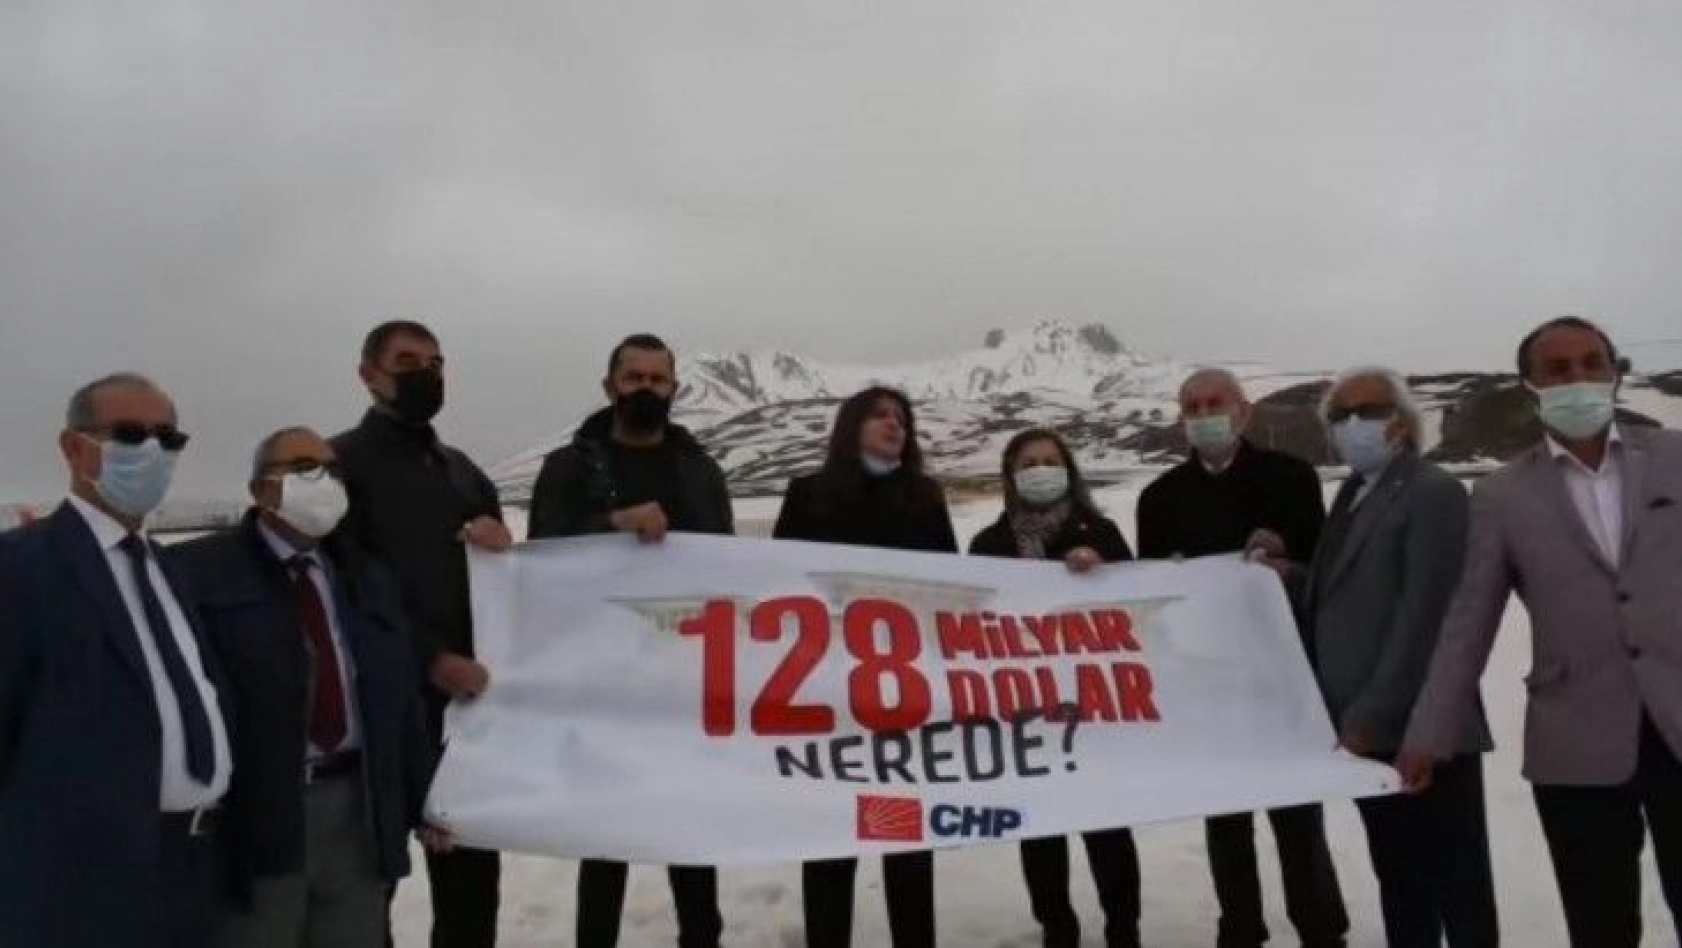 CHP'den Erciyes'te '128 Milyar dolar nerede?' eylemi